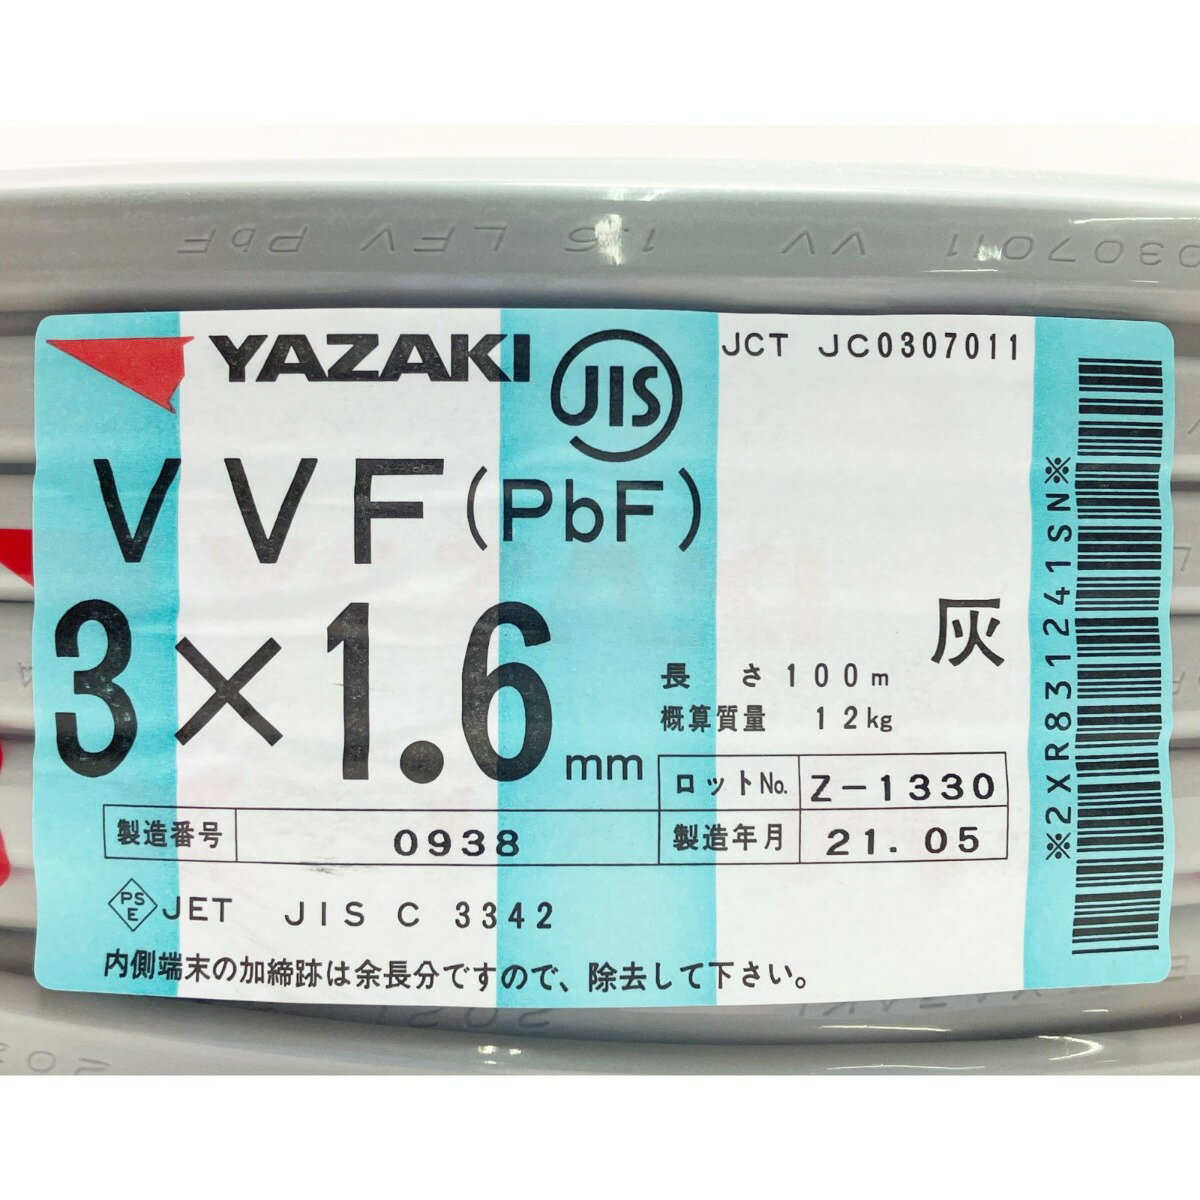 ▽▽【中古】YAZAKI VVFケーブル（PbF） 3×1.6mm 100m 灰 Sランク